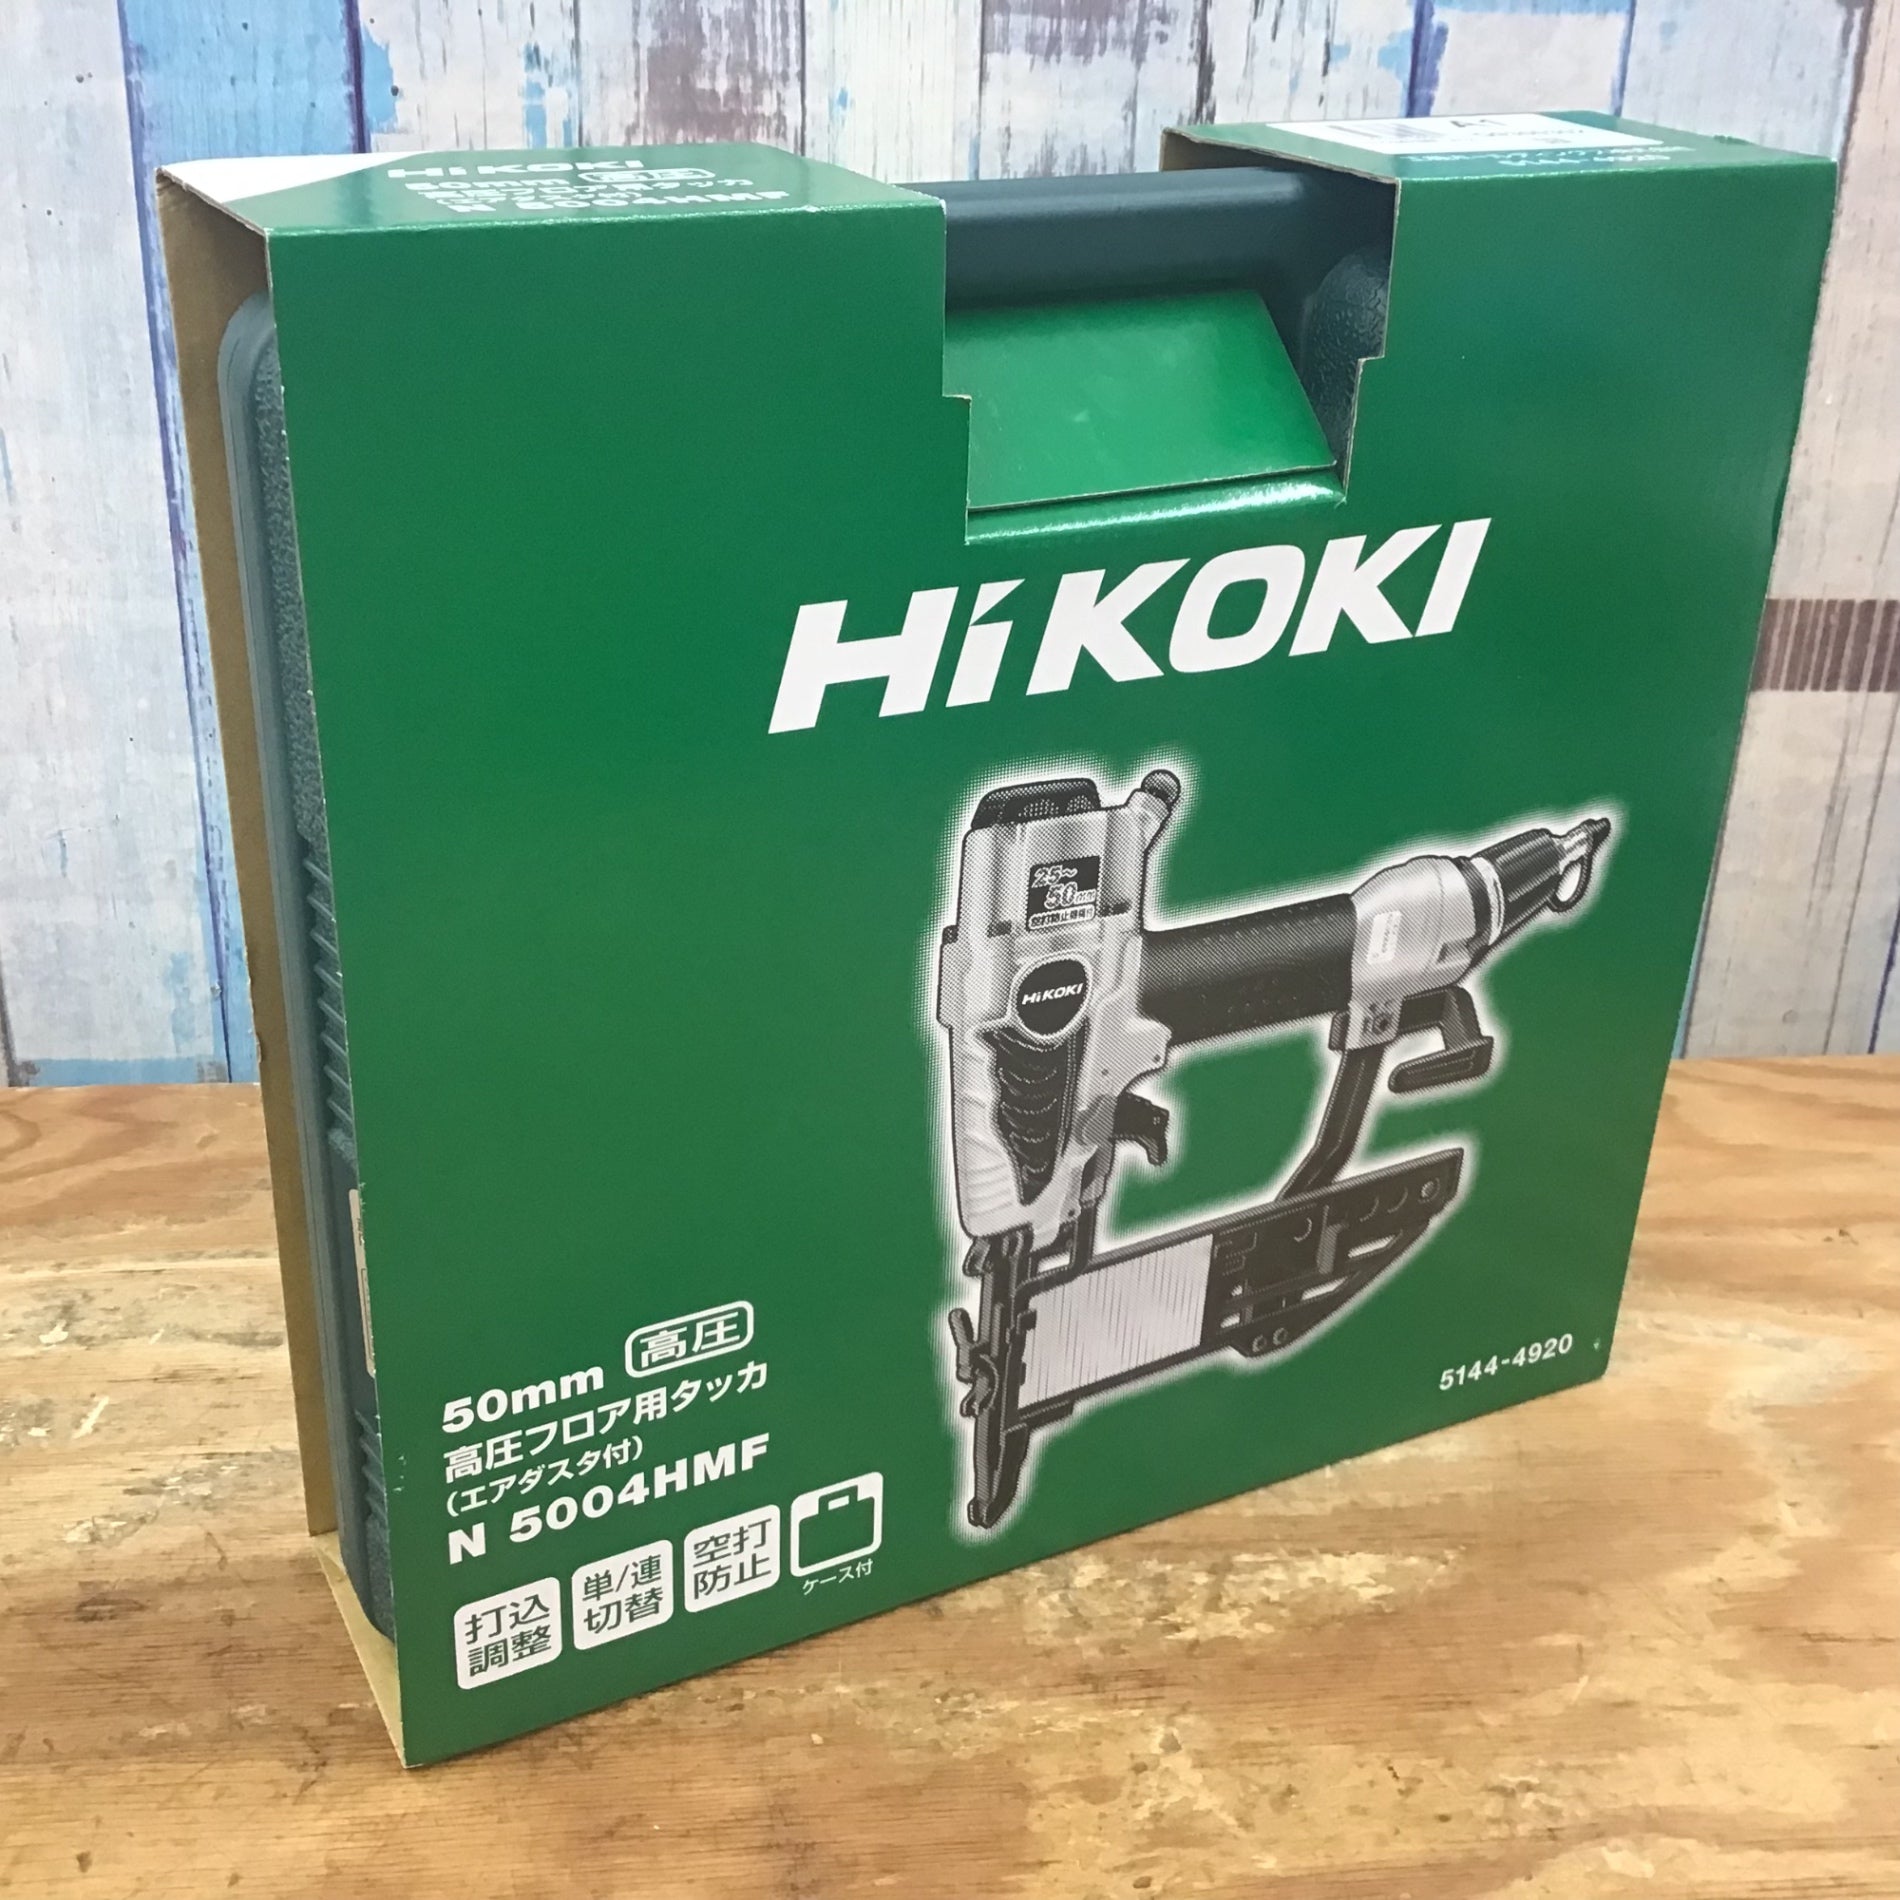 ☆ハイコーキ(HIKOKI ※旧:日立工機) 高圧フロアタッカ N5004HMF【柏店